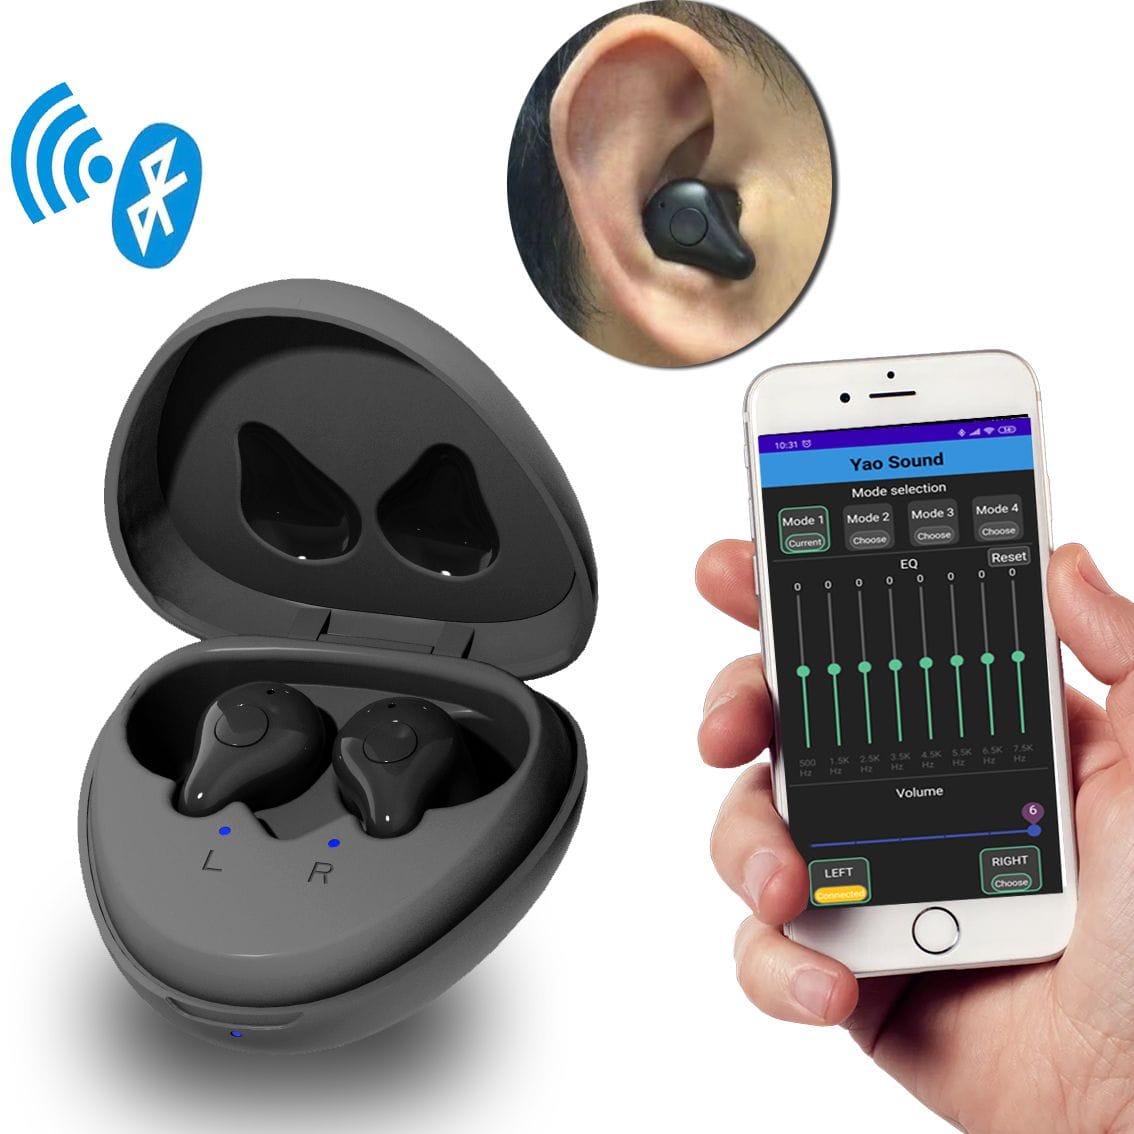 Nuevo par de audífonos eEAR y auriculares Bluetooth (BT) todo en uno para oídos derecho e izquierdo. Tecnología de punta, con aplicaciones para audífonos fáciles de usar. Único en la industria de los audífonos. La mejor calidad a precios asequibles.